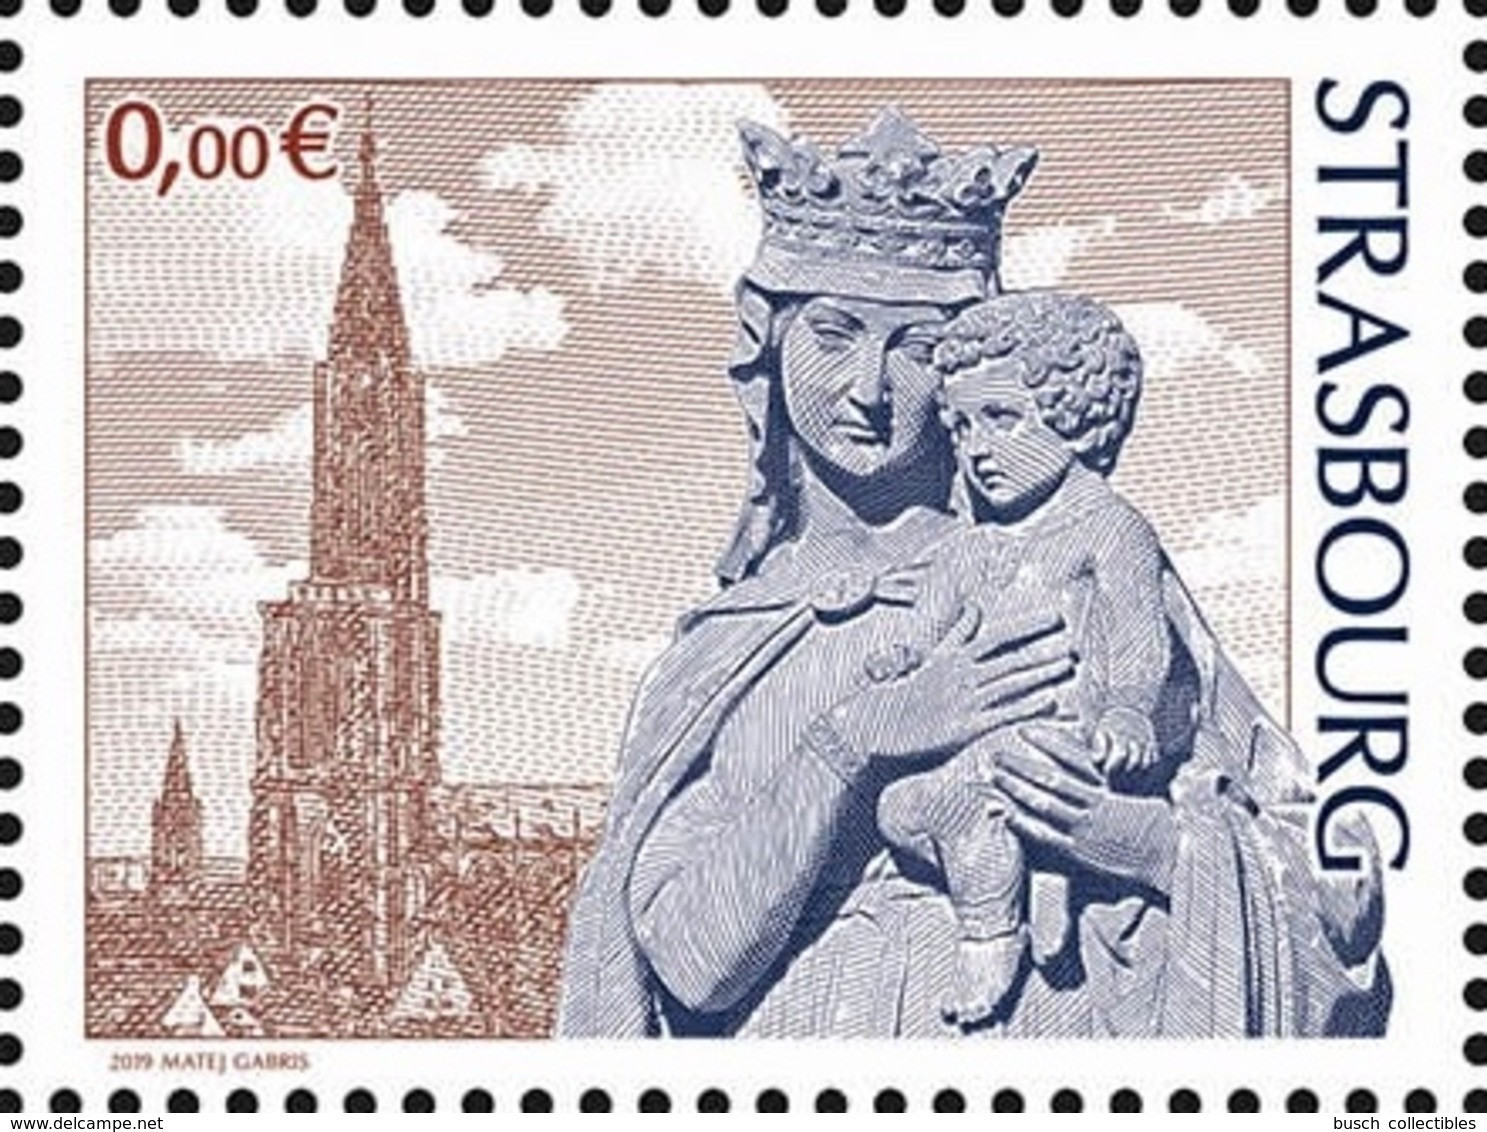 France 2019 - Vignette 0 € " STRASBOURG " Cathédrale Münster Cathedral Religion Matej Gabris - Unused Stamps